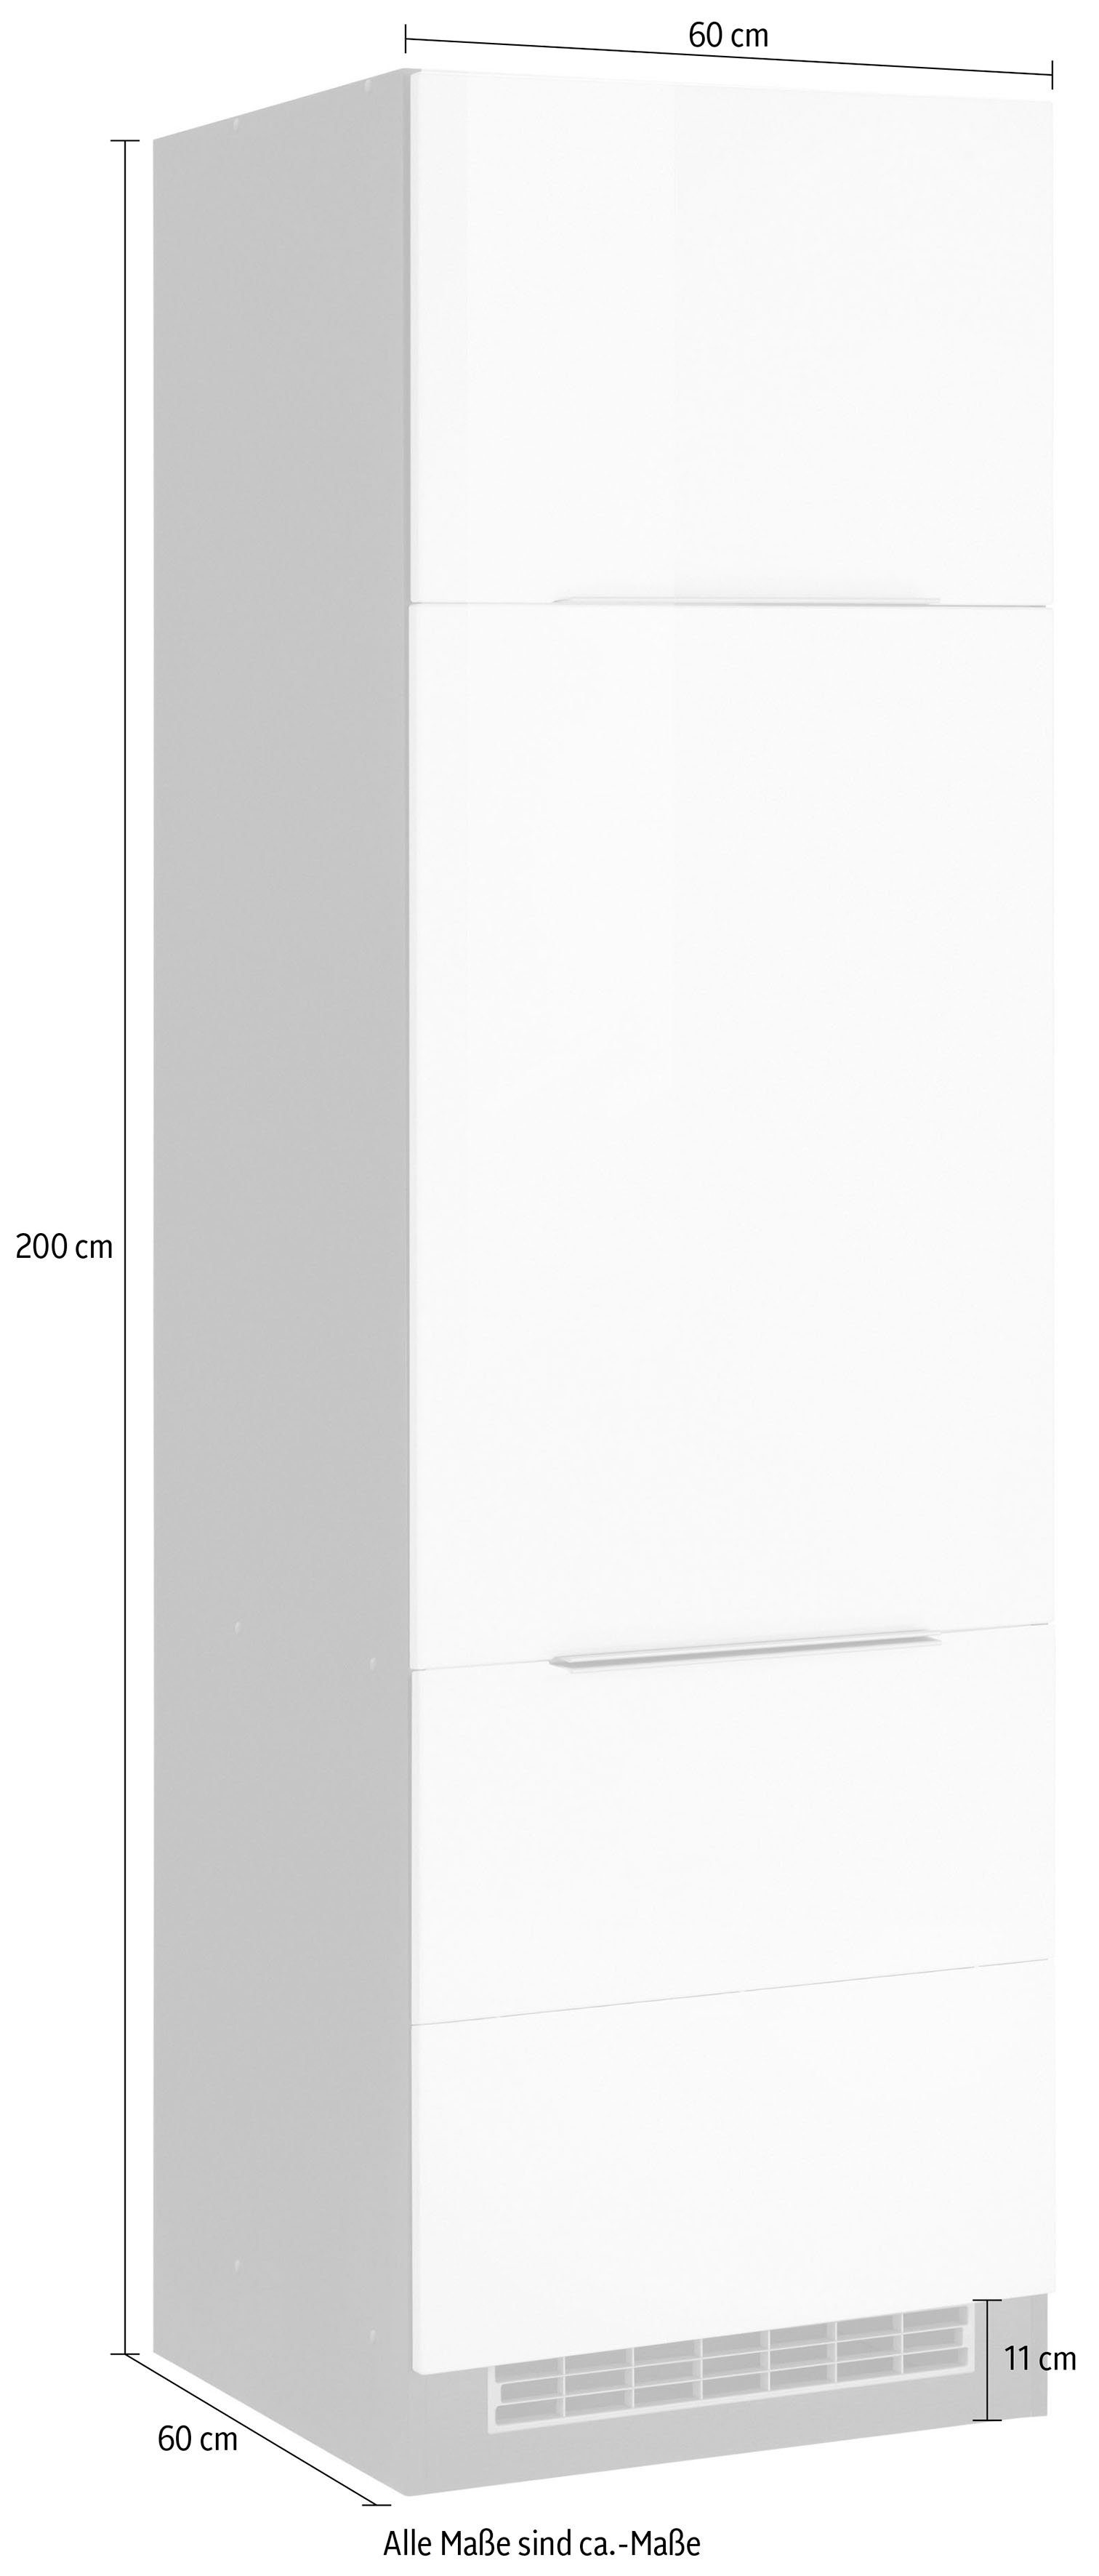 MÖBEL HELD Brindisi Kühlumbauschrank hoch, Hochglanz/grafit hochwertige cm 60 MDF weiß | Fronten cm 200 breit, grafit